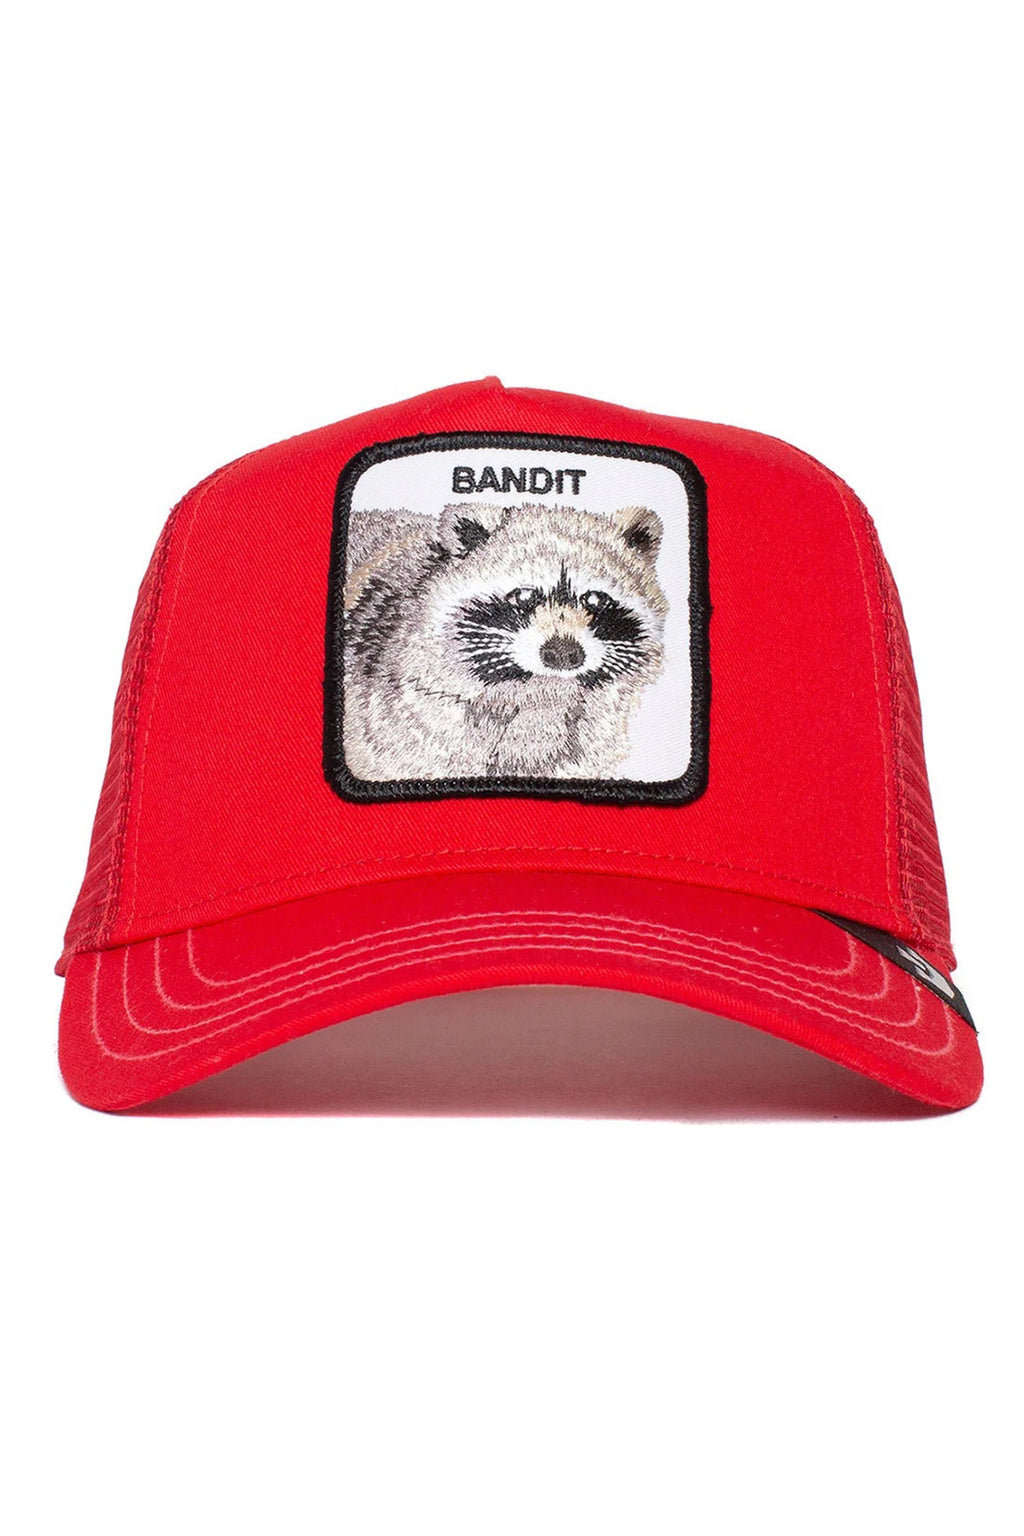 The Bandit Trucker Hat